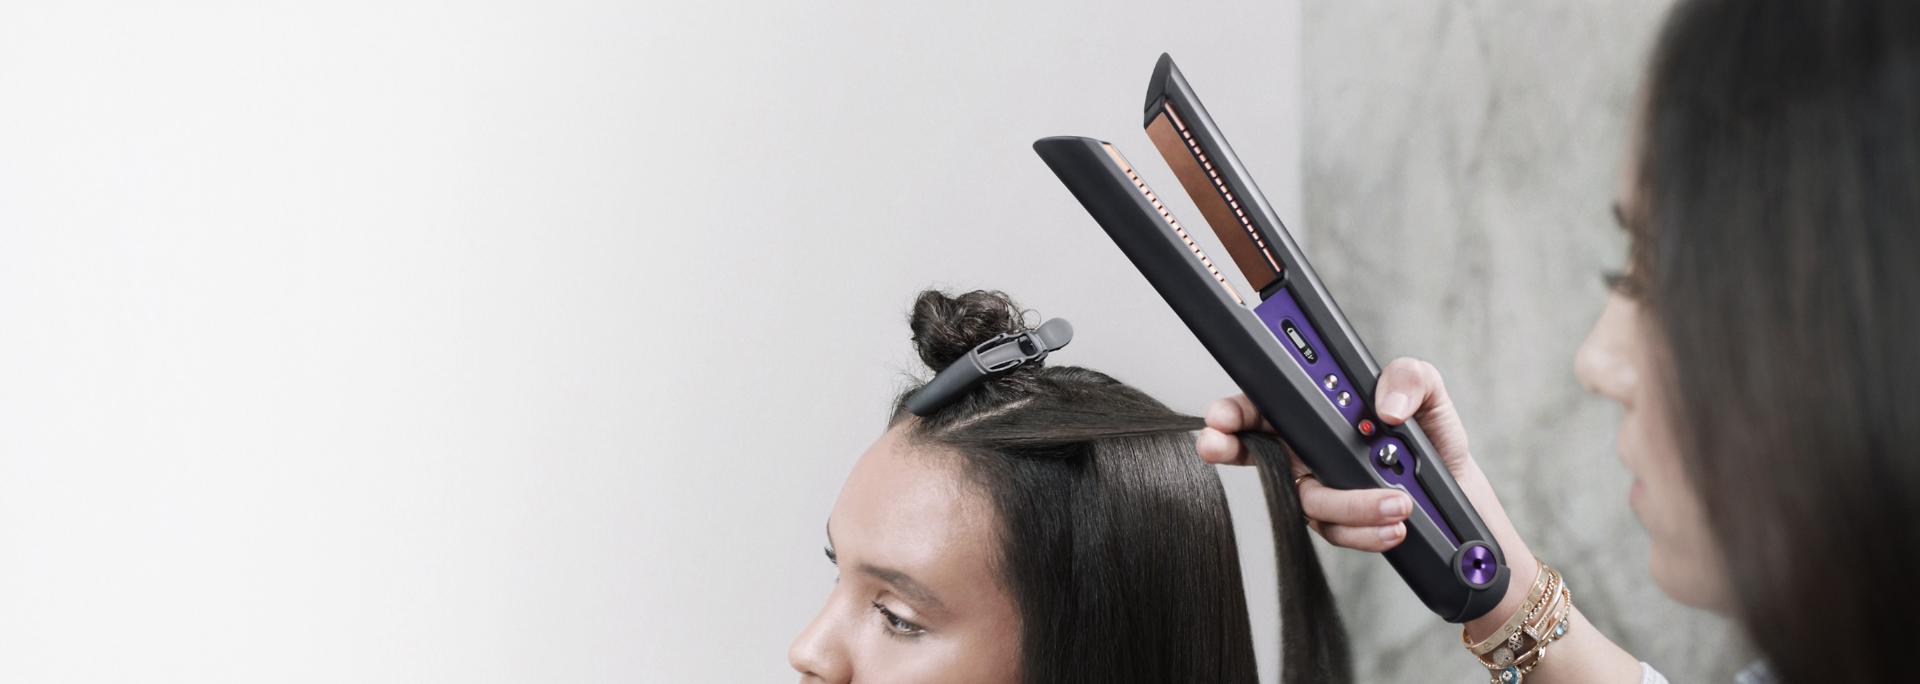 Közelkép valakiről, aki Dyson Corrale hajvasalóval formázza a haját.